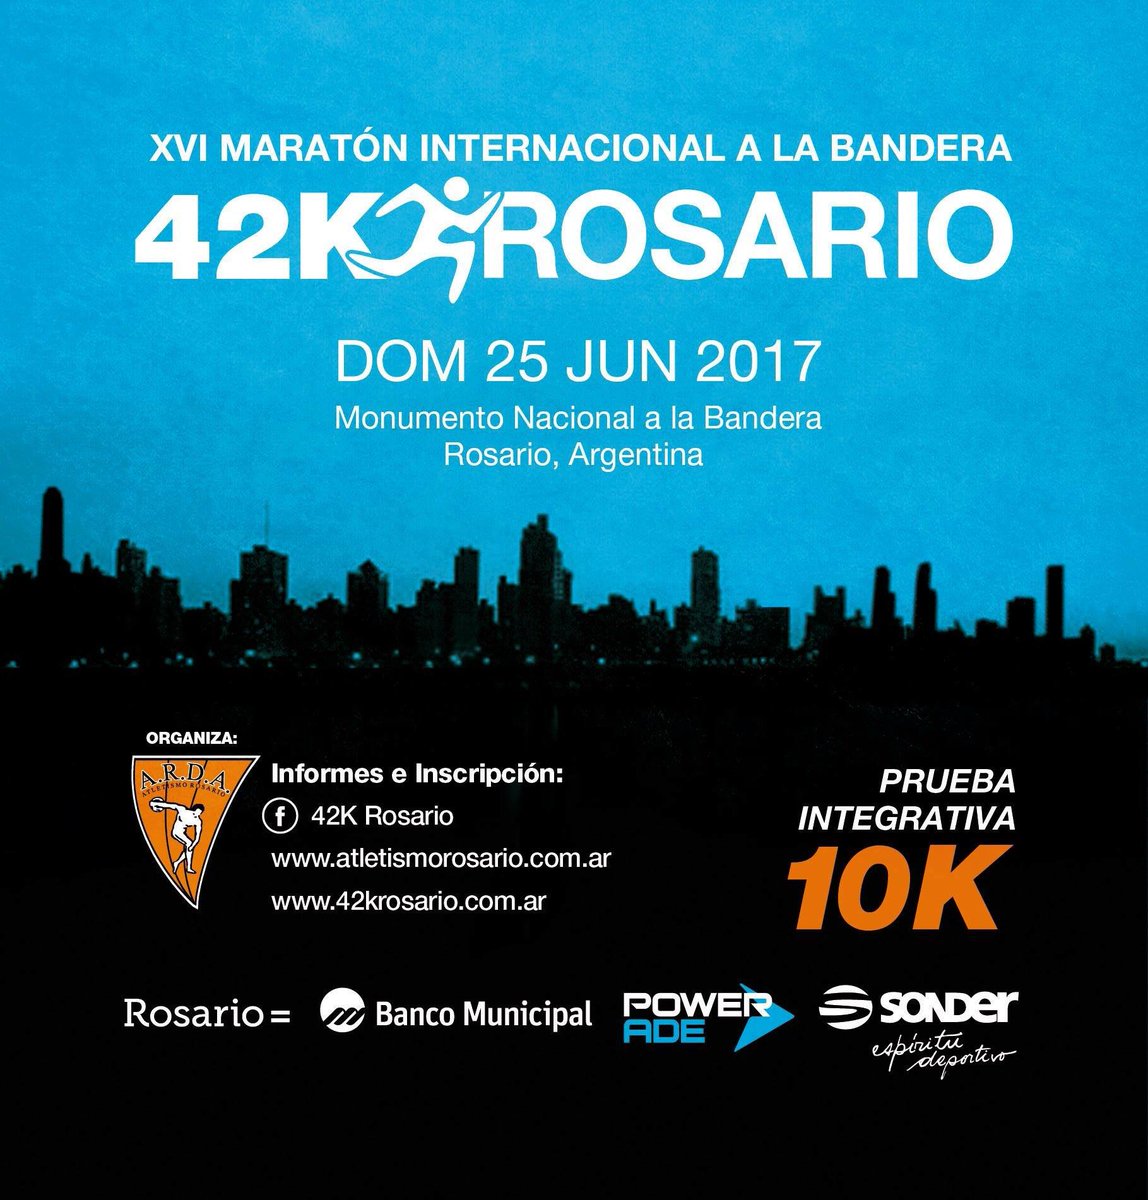 42k Rosario 2017 maraton de la bandera locos por correr 01